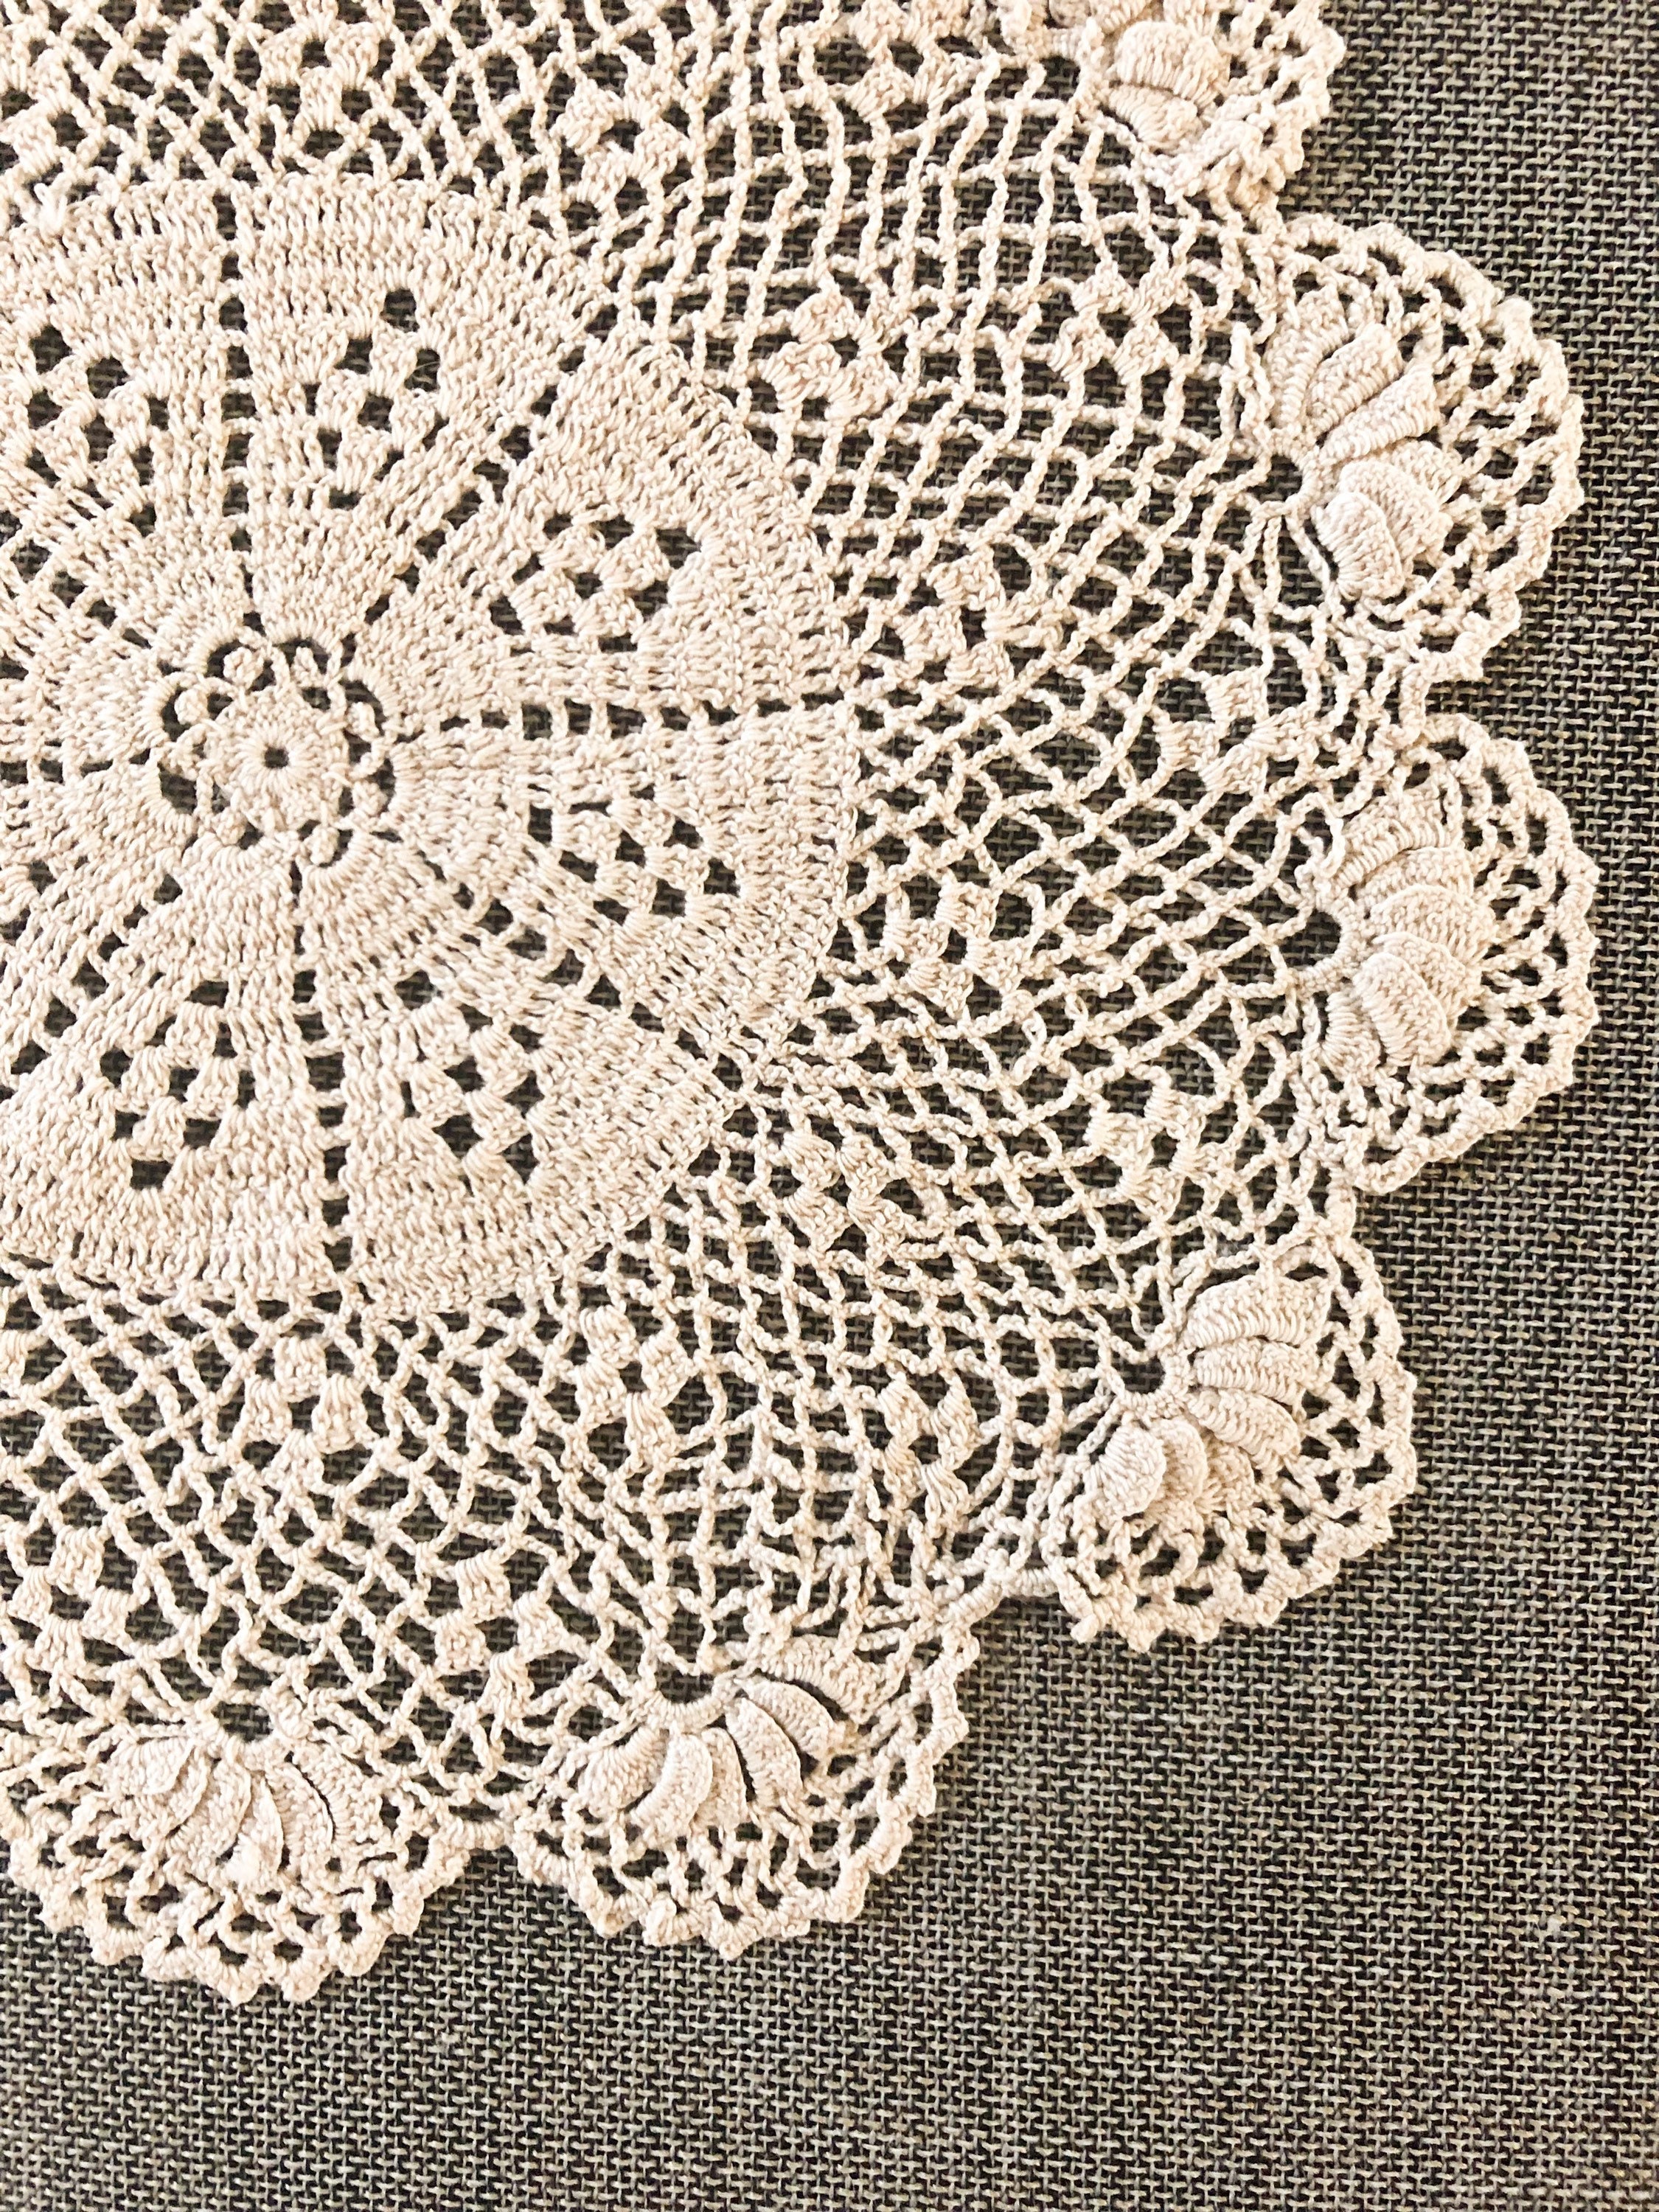 Vintage Crochet Doily fine ecru vintage fan pattern doily